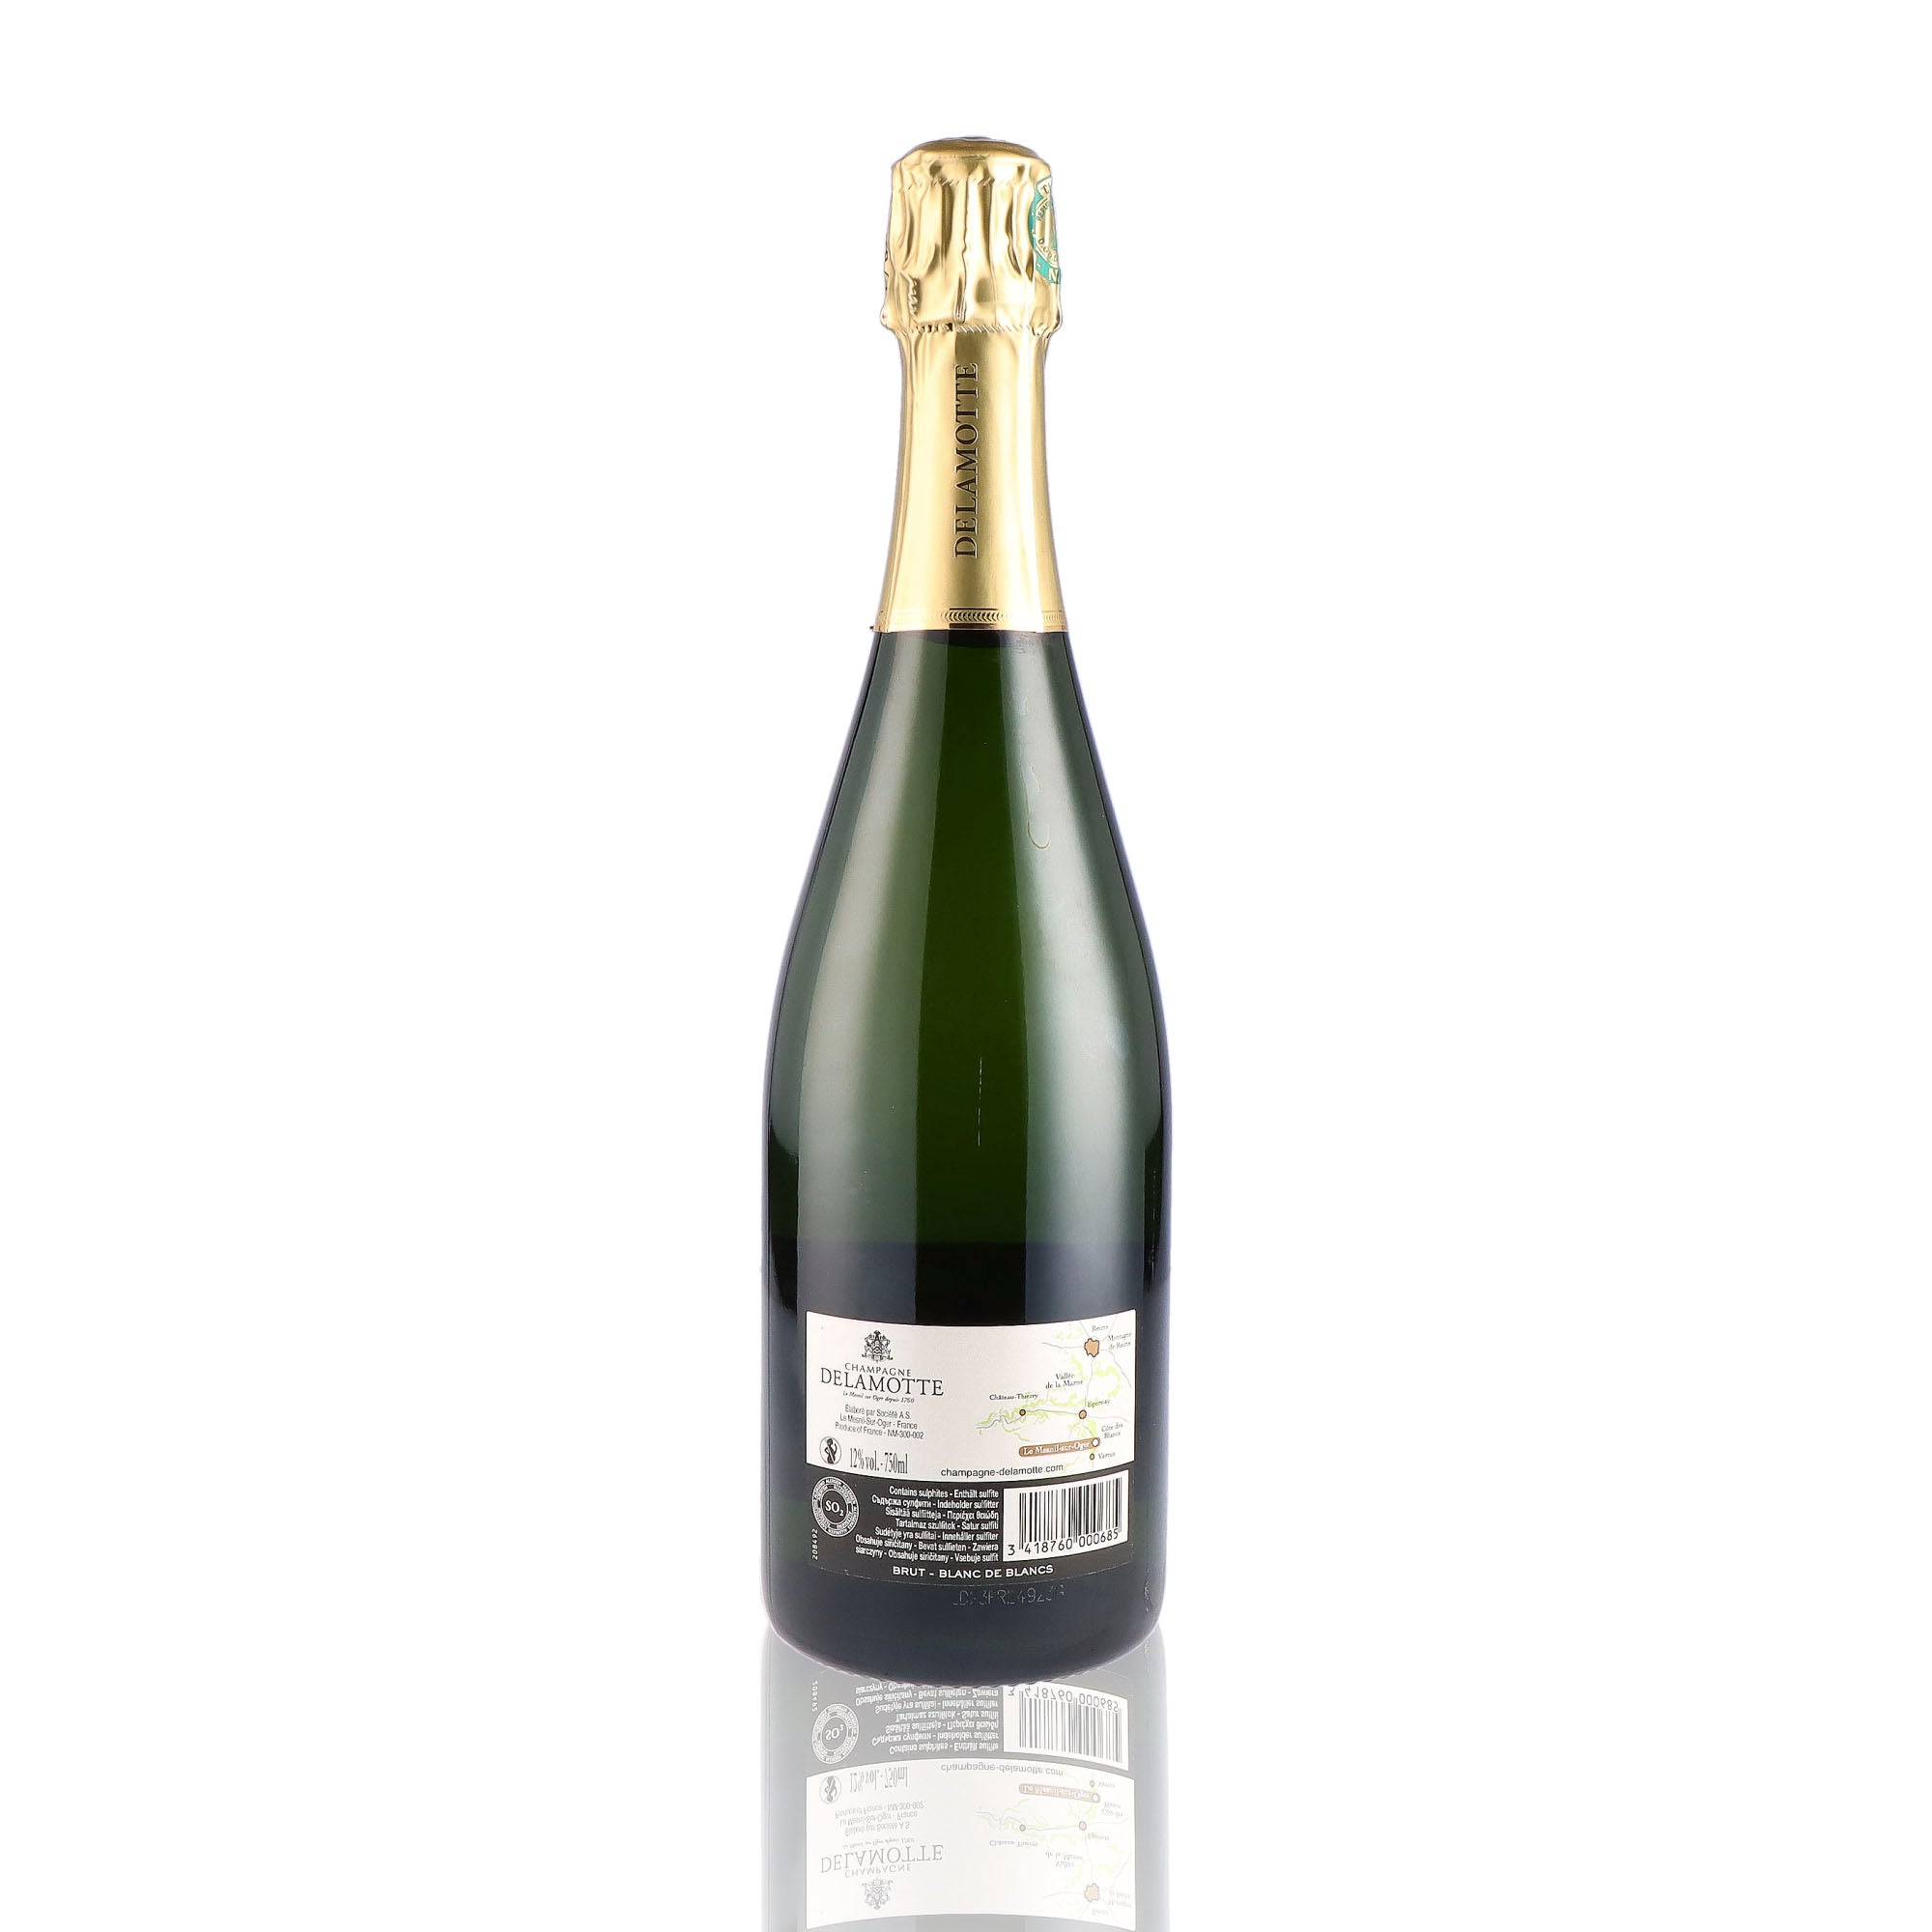 Une bouteille de champagne de la marque Delamotte, de type blanc de blancs.